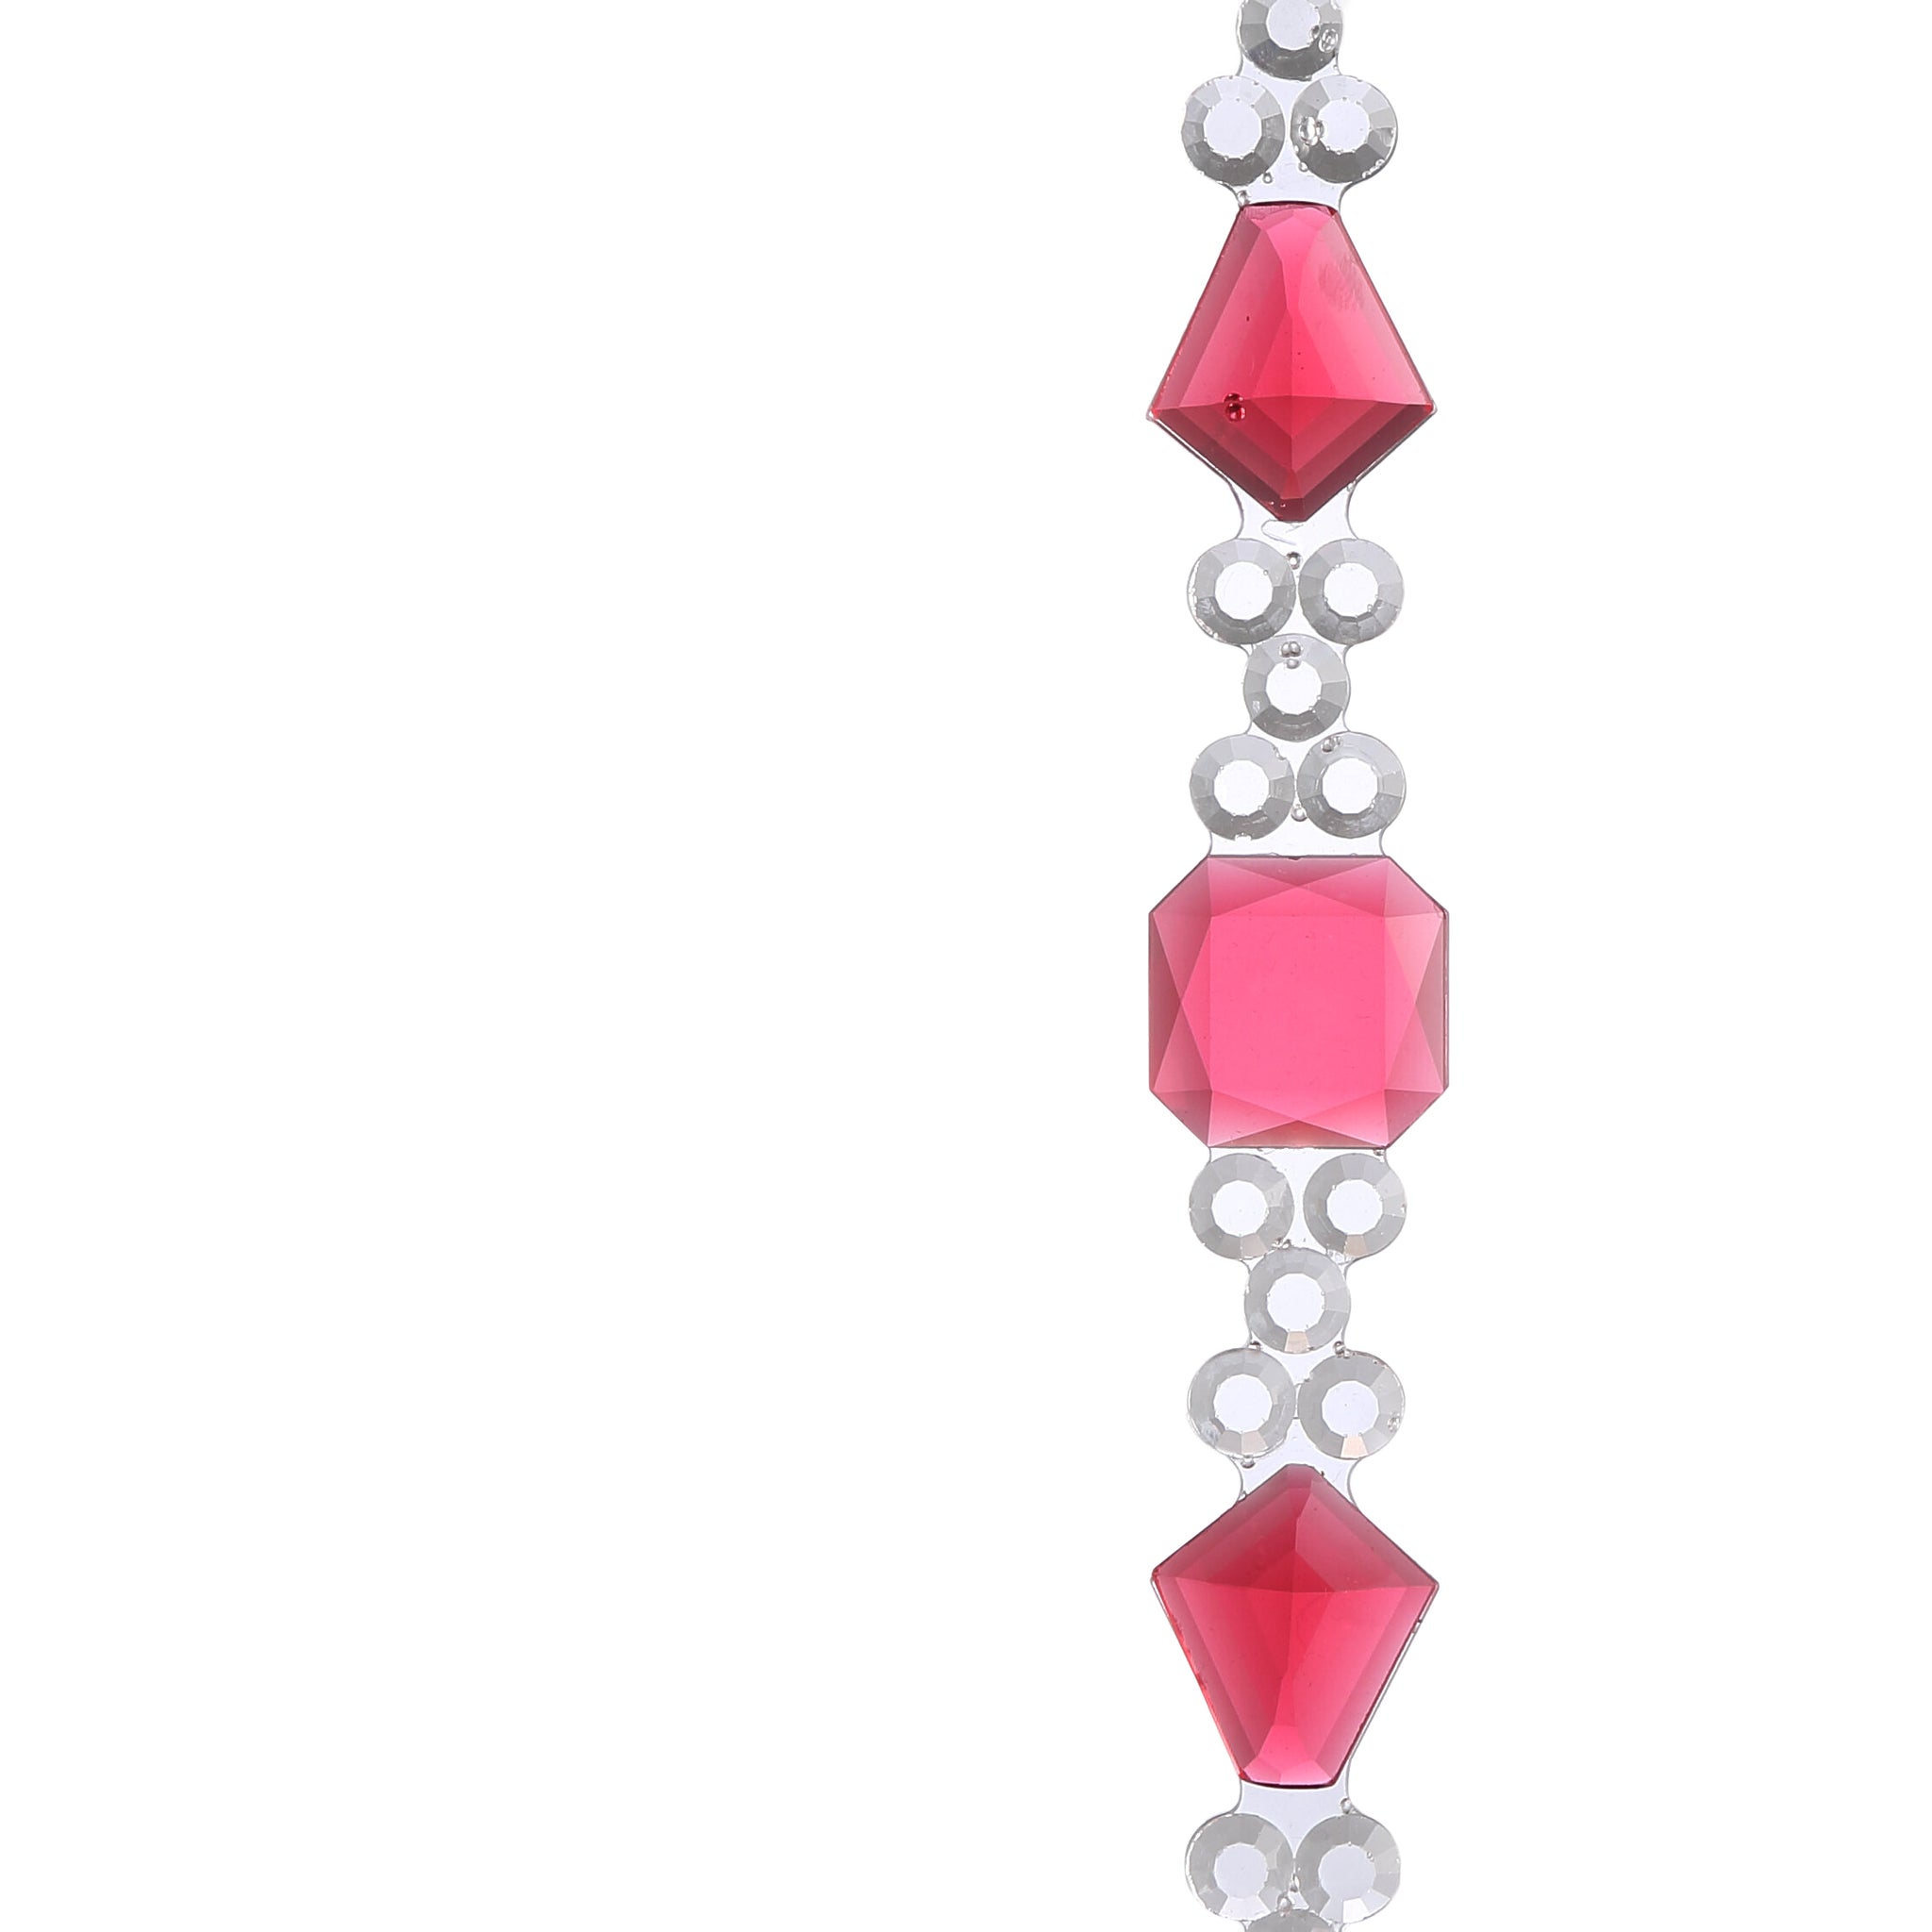 Crown Bracelet Pink│Armband Roze│Corsari Jewels│detail armband close up